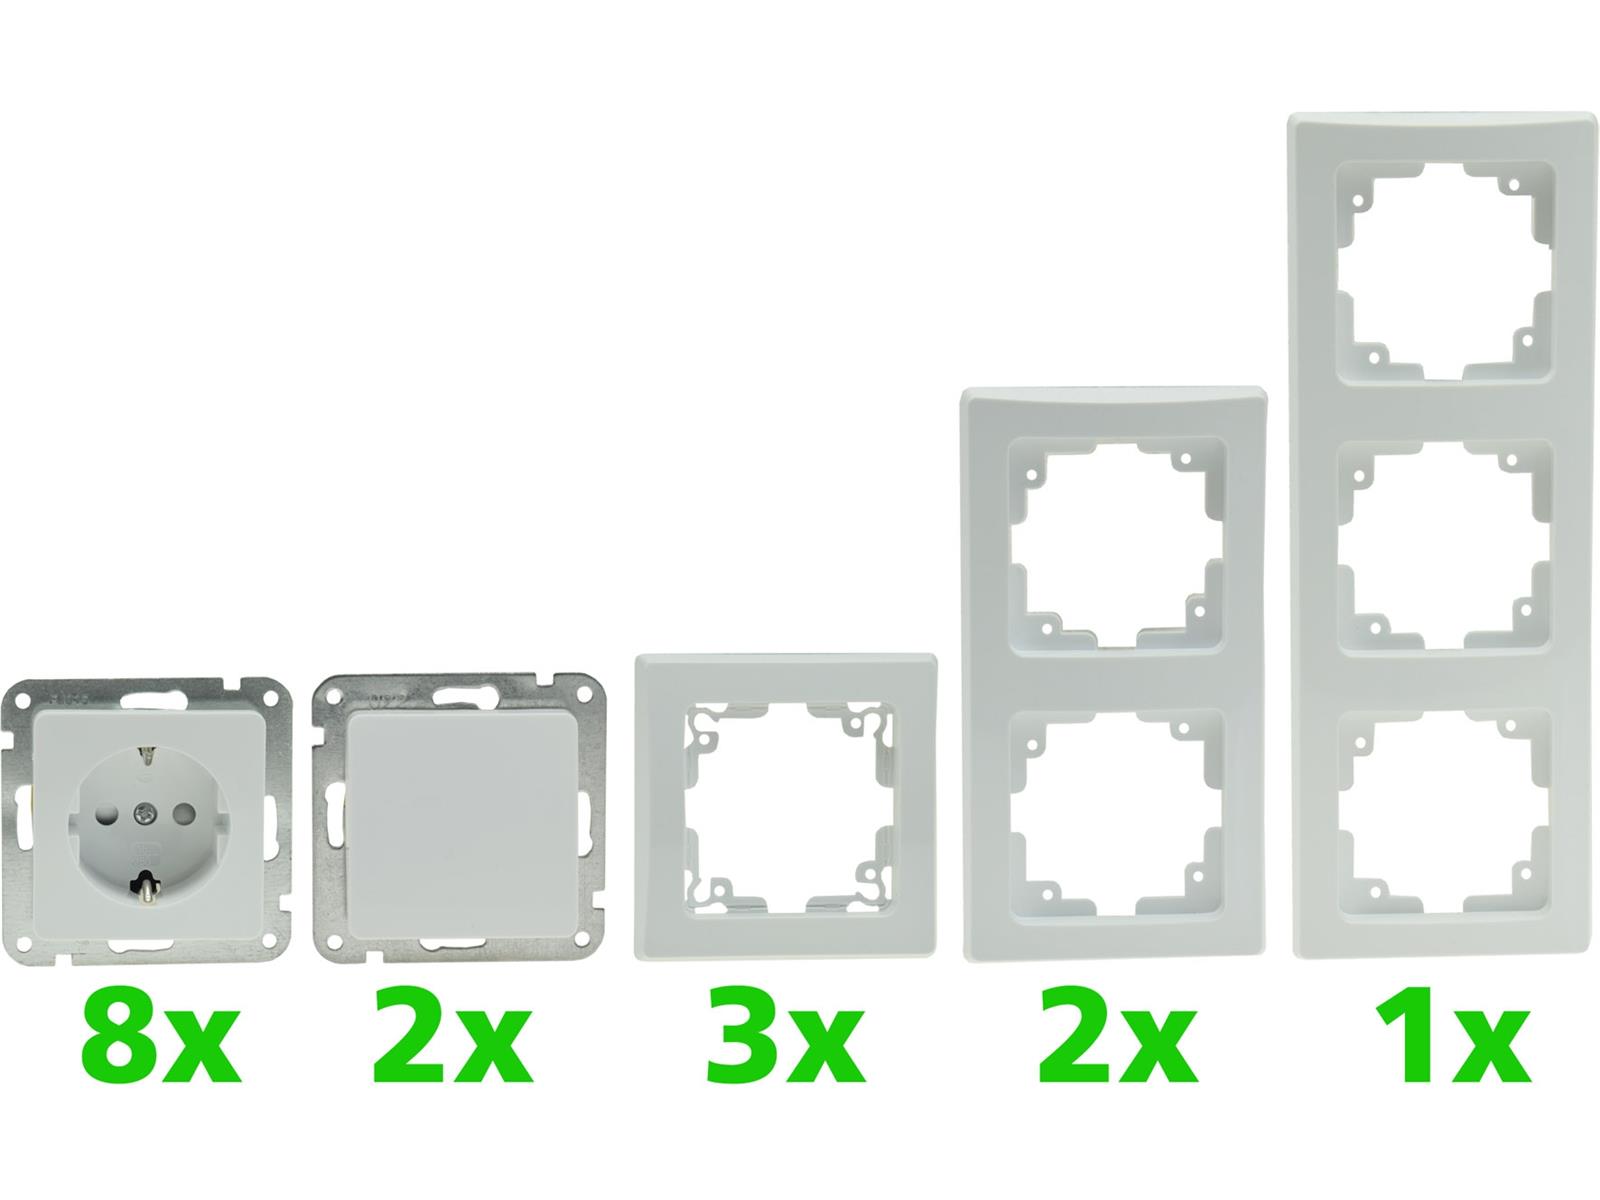 DELPHI Starter-Kit, 16-teilig "PRO",weiß 8x Steckdose, 2x Schalter, Klemmanschluß